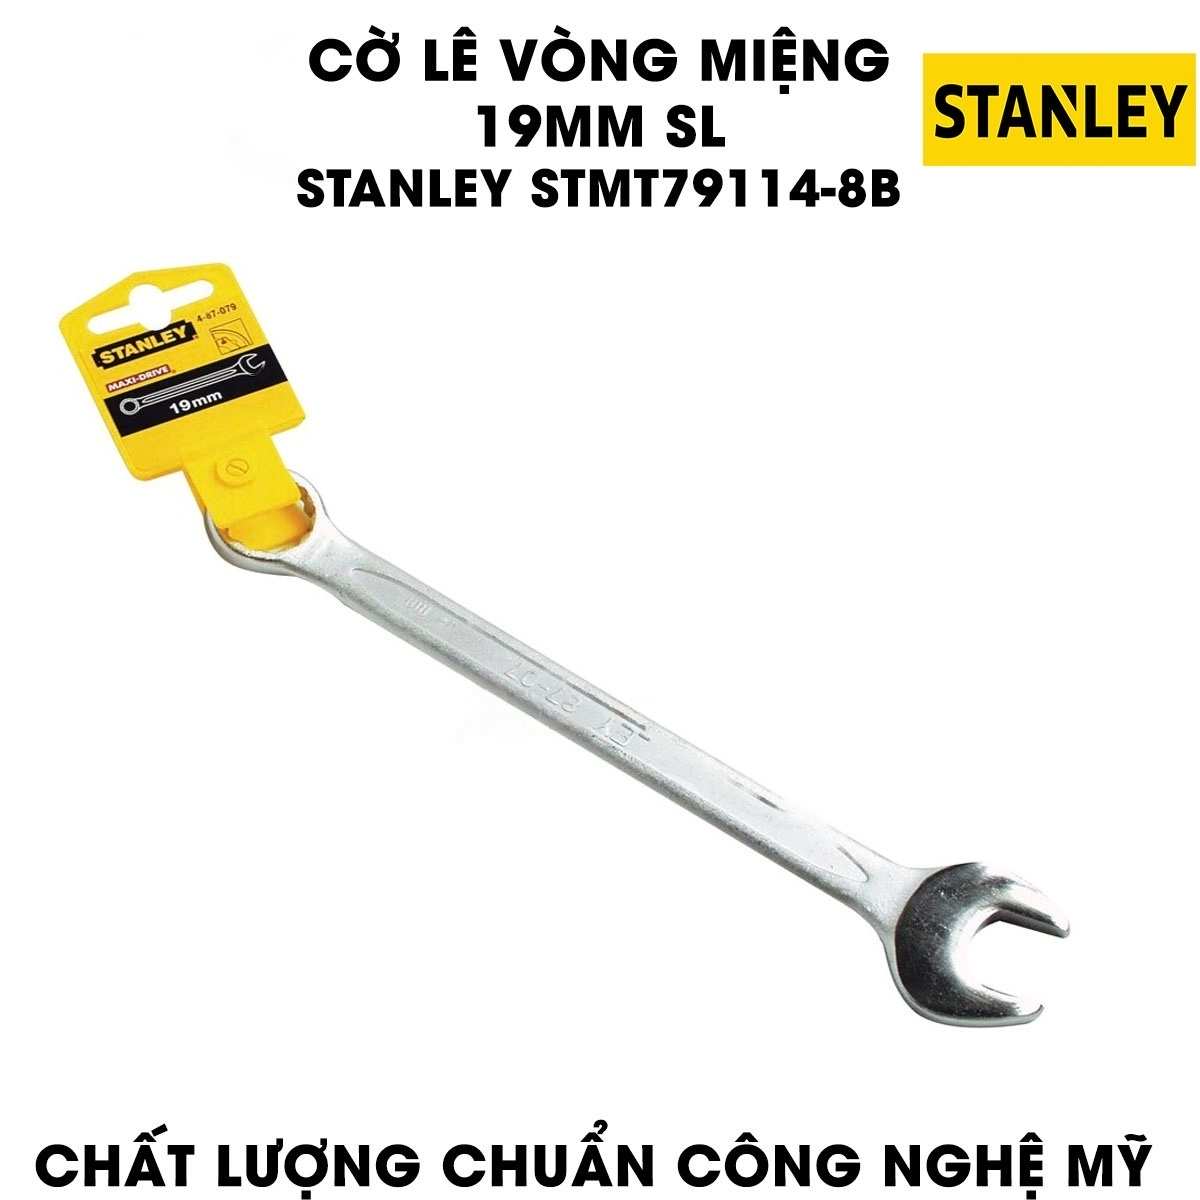 Hình ảnh 2 của mặt hàng Cờ lê vòng miệng 19mm SL Stanley STMT79114-8B